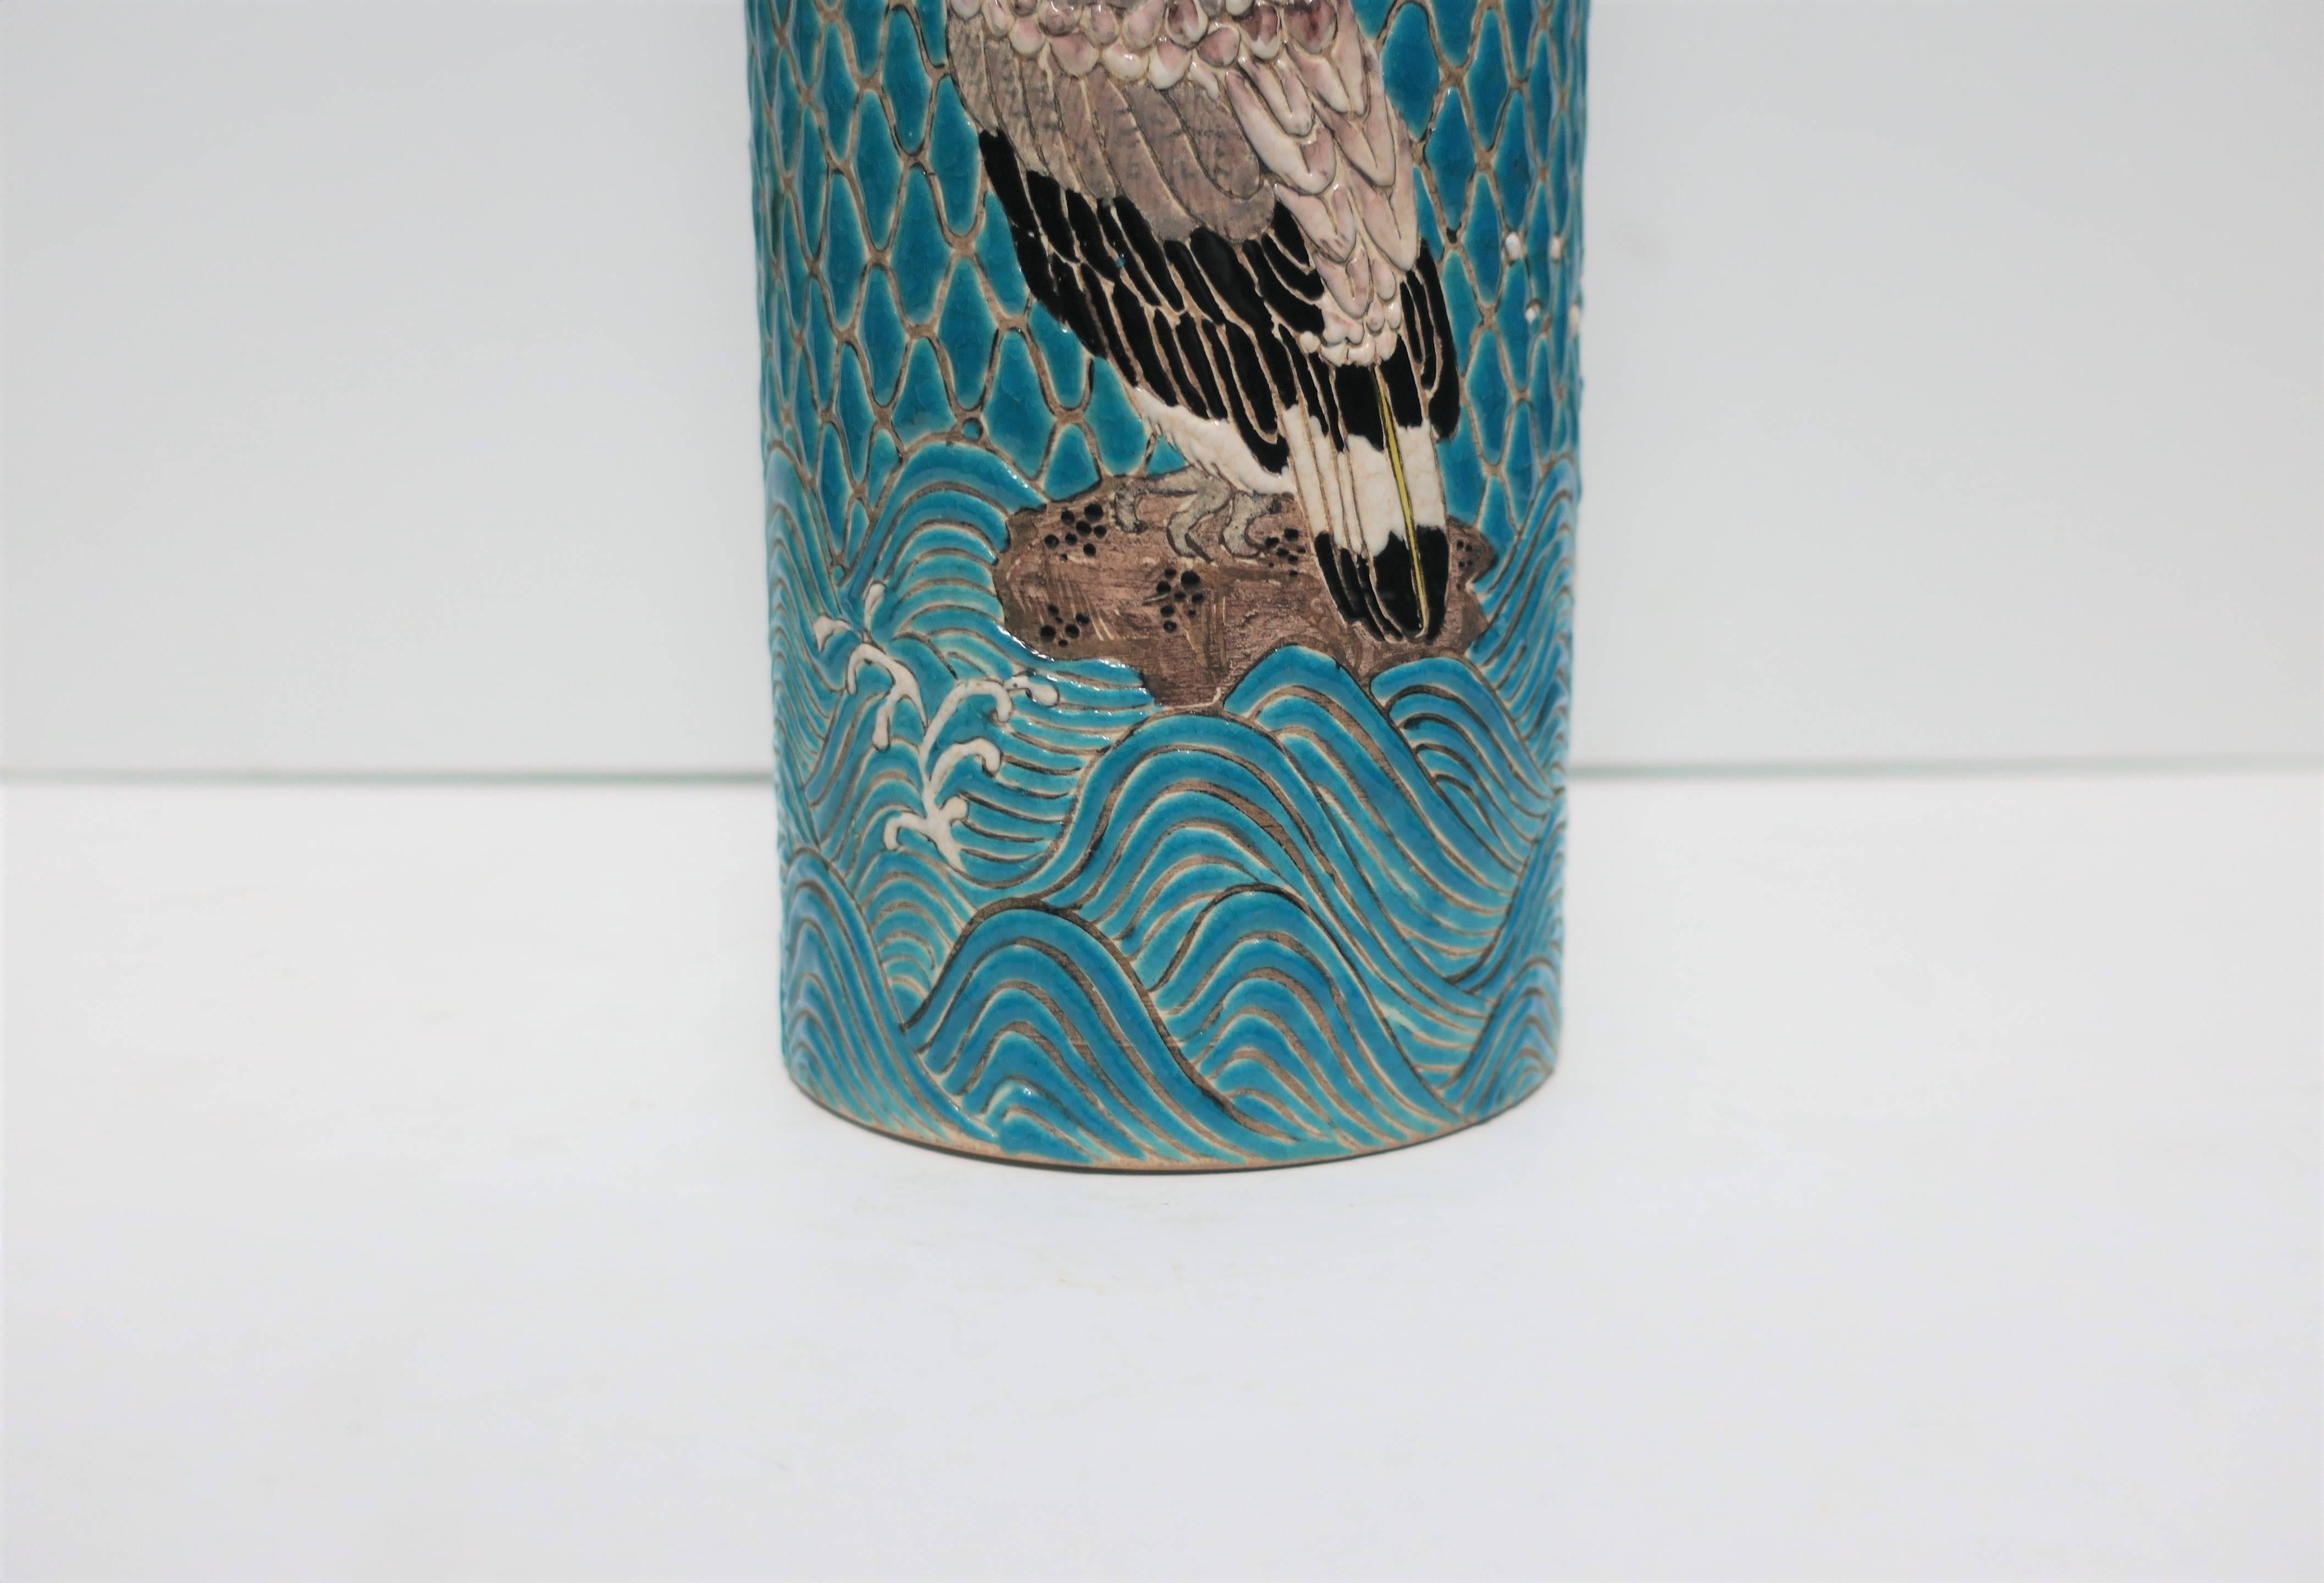 Glazed Japanese Satsuma Majolica Style Earthenware Vase with Birds